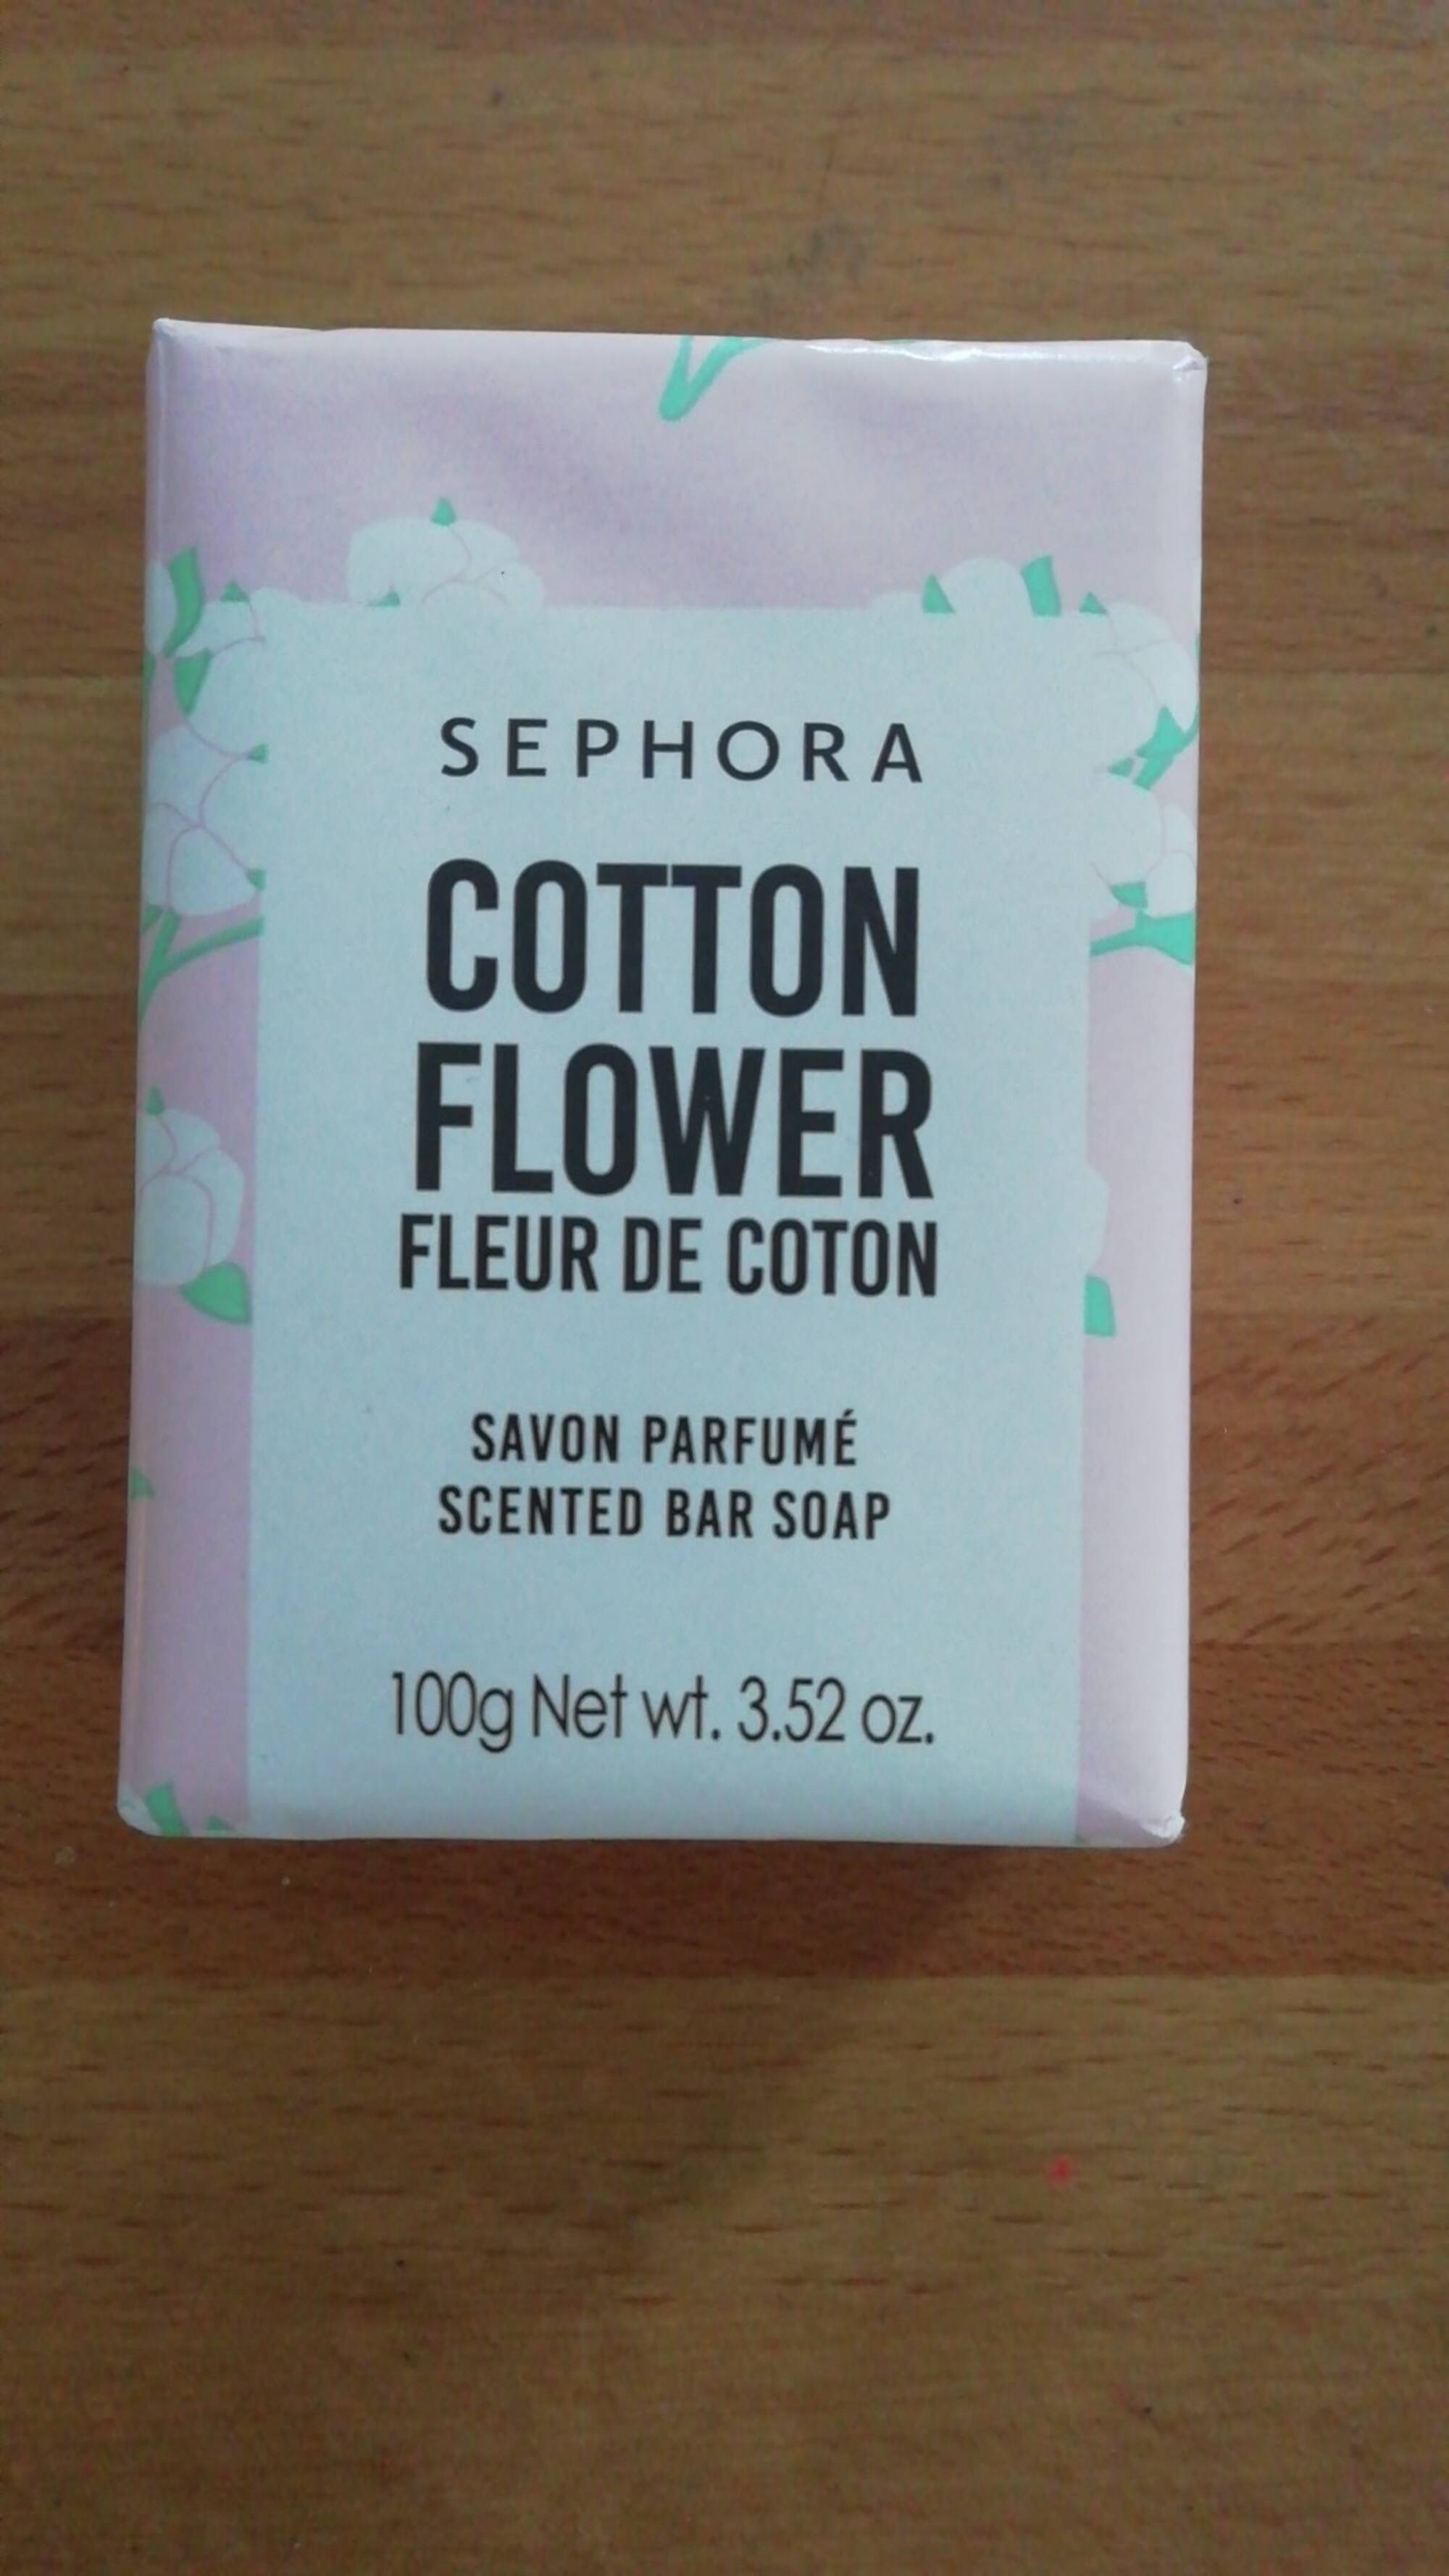 SEPHORA - Fleur de coton - Savon parfumé